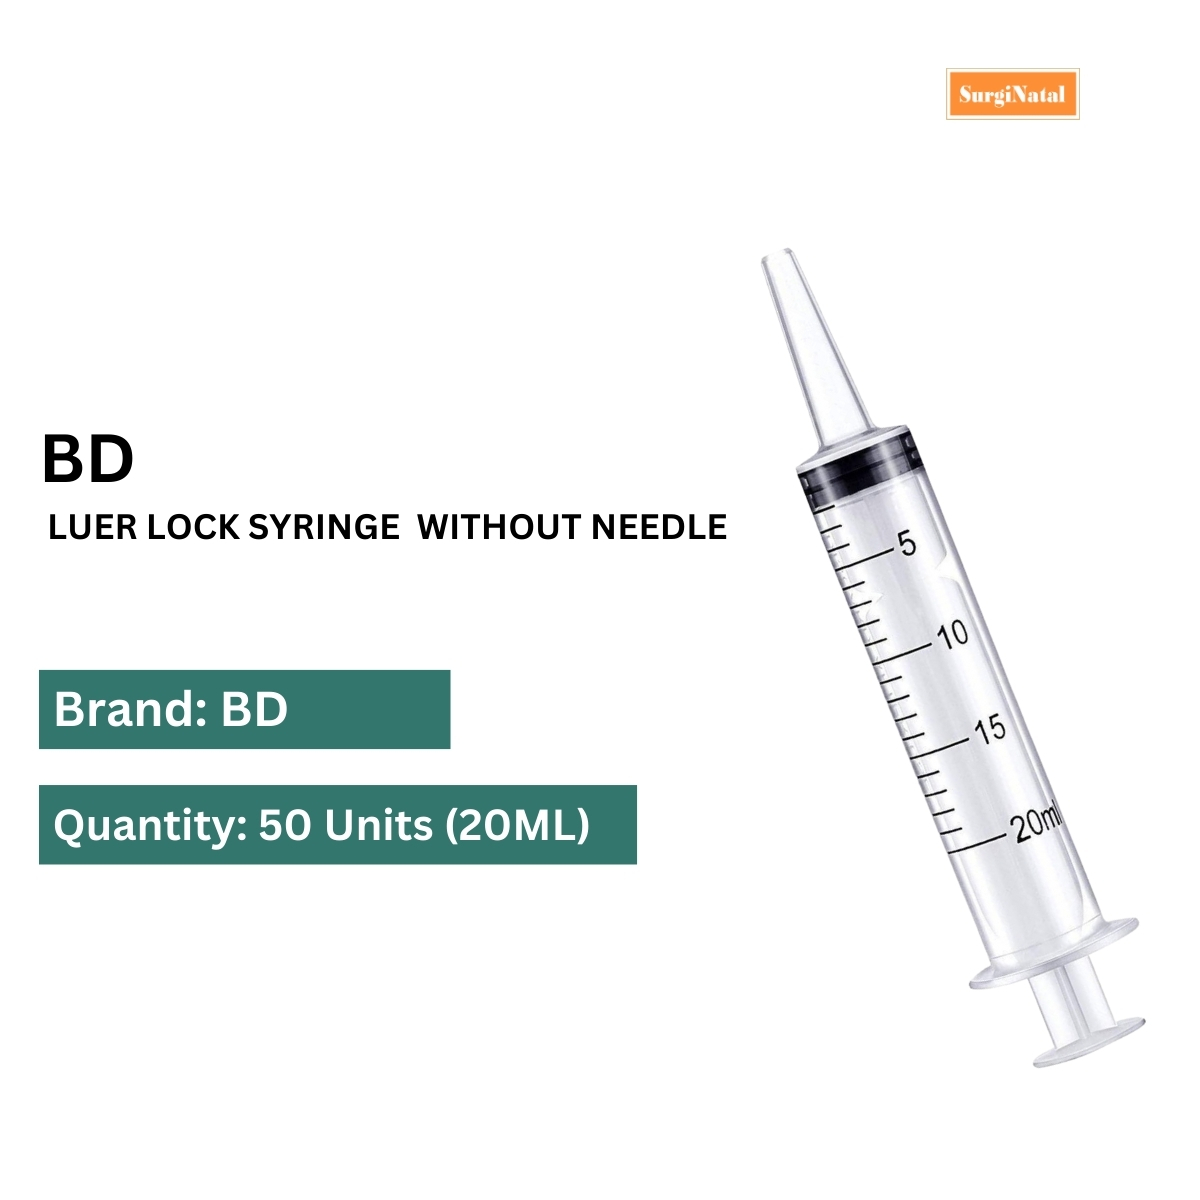 bd luer lock syringe 20ml without needle